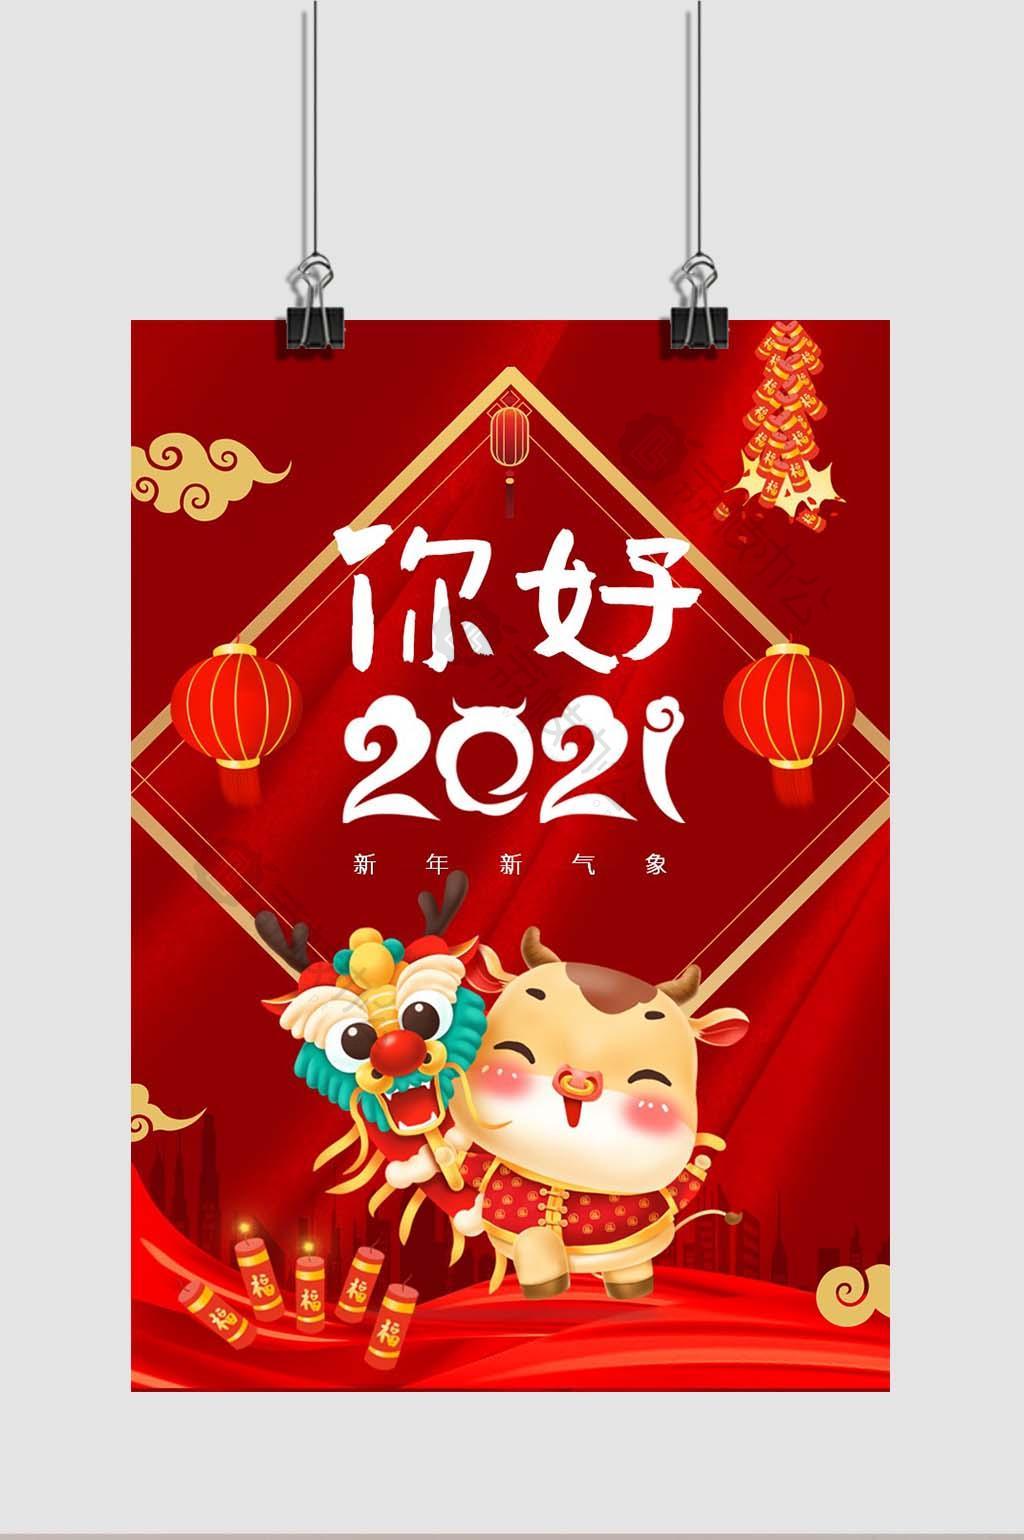 中国红你好2021新年快乐海报word模板 image